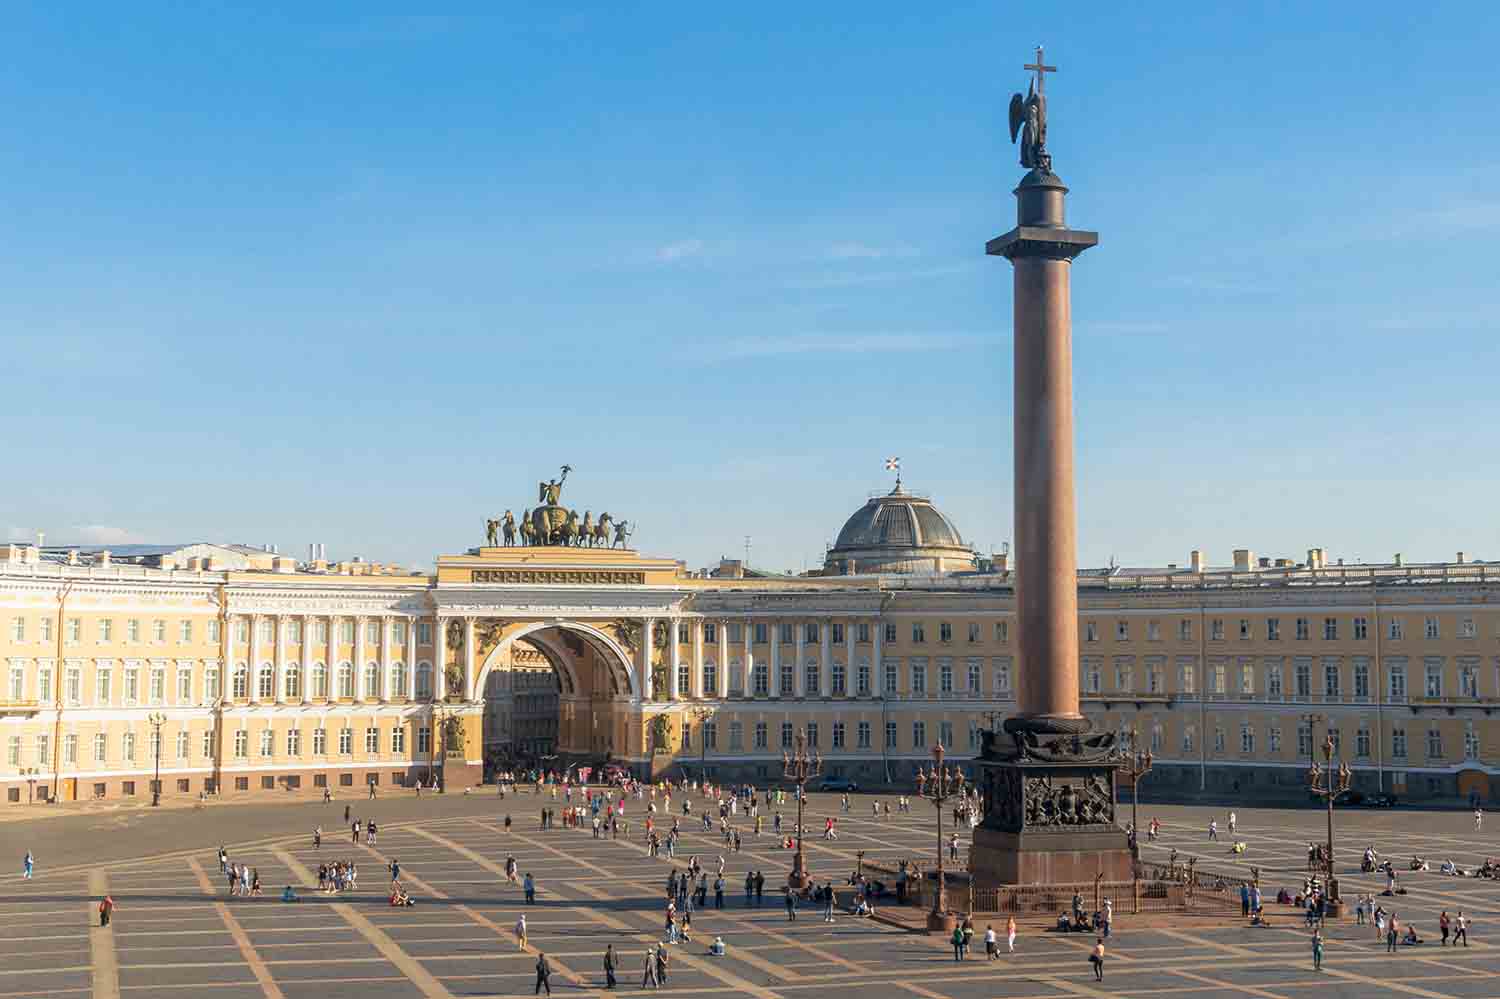 Дворцовая площадь – сердце Санкт-Петербурга
